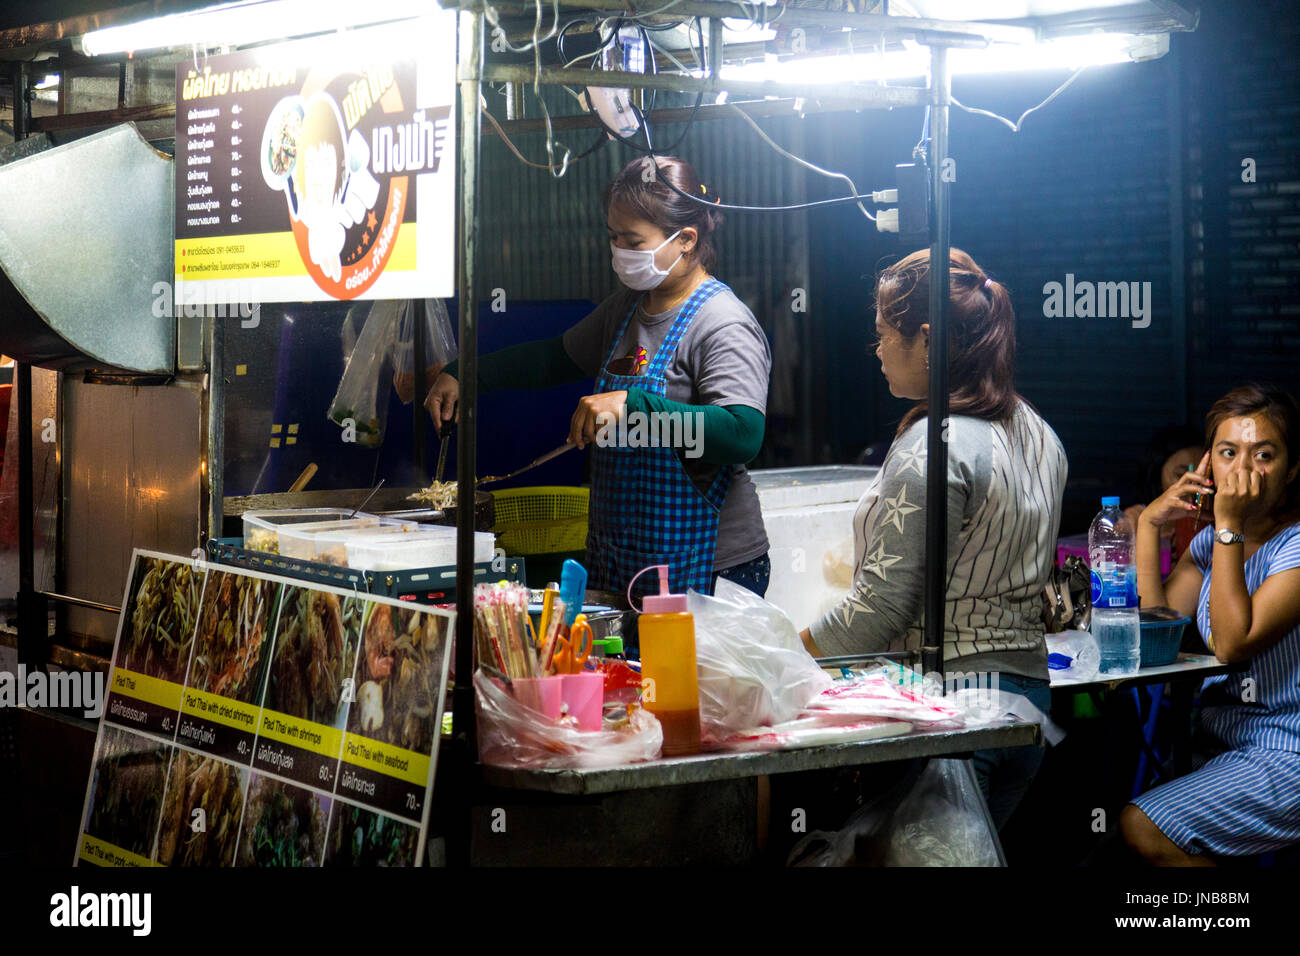 Food stalls at a night market in Chinatown, Bangkok, Thailand Stock Photo